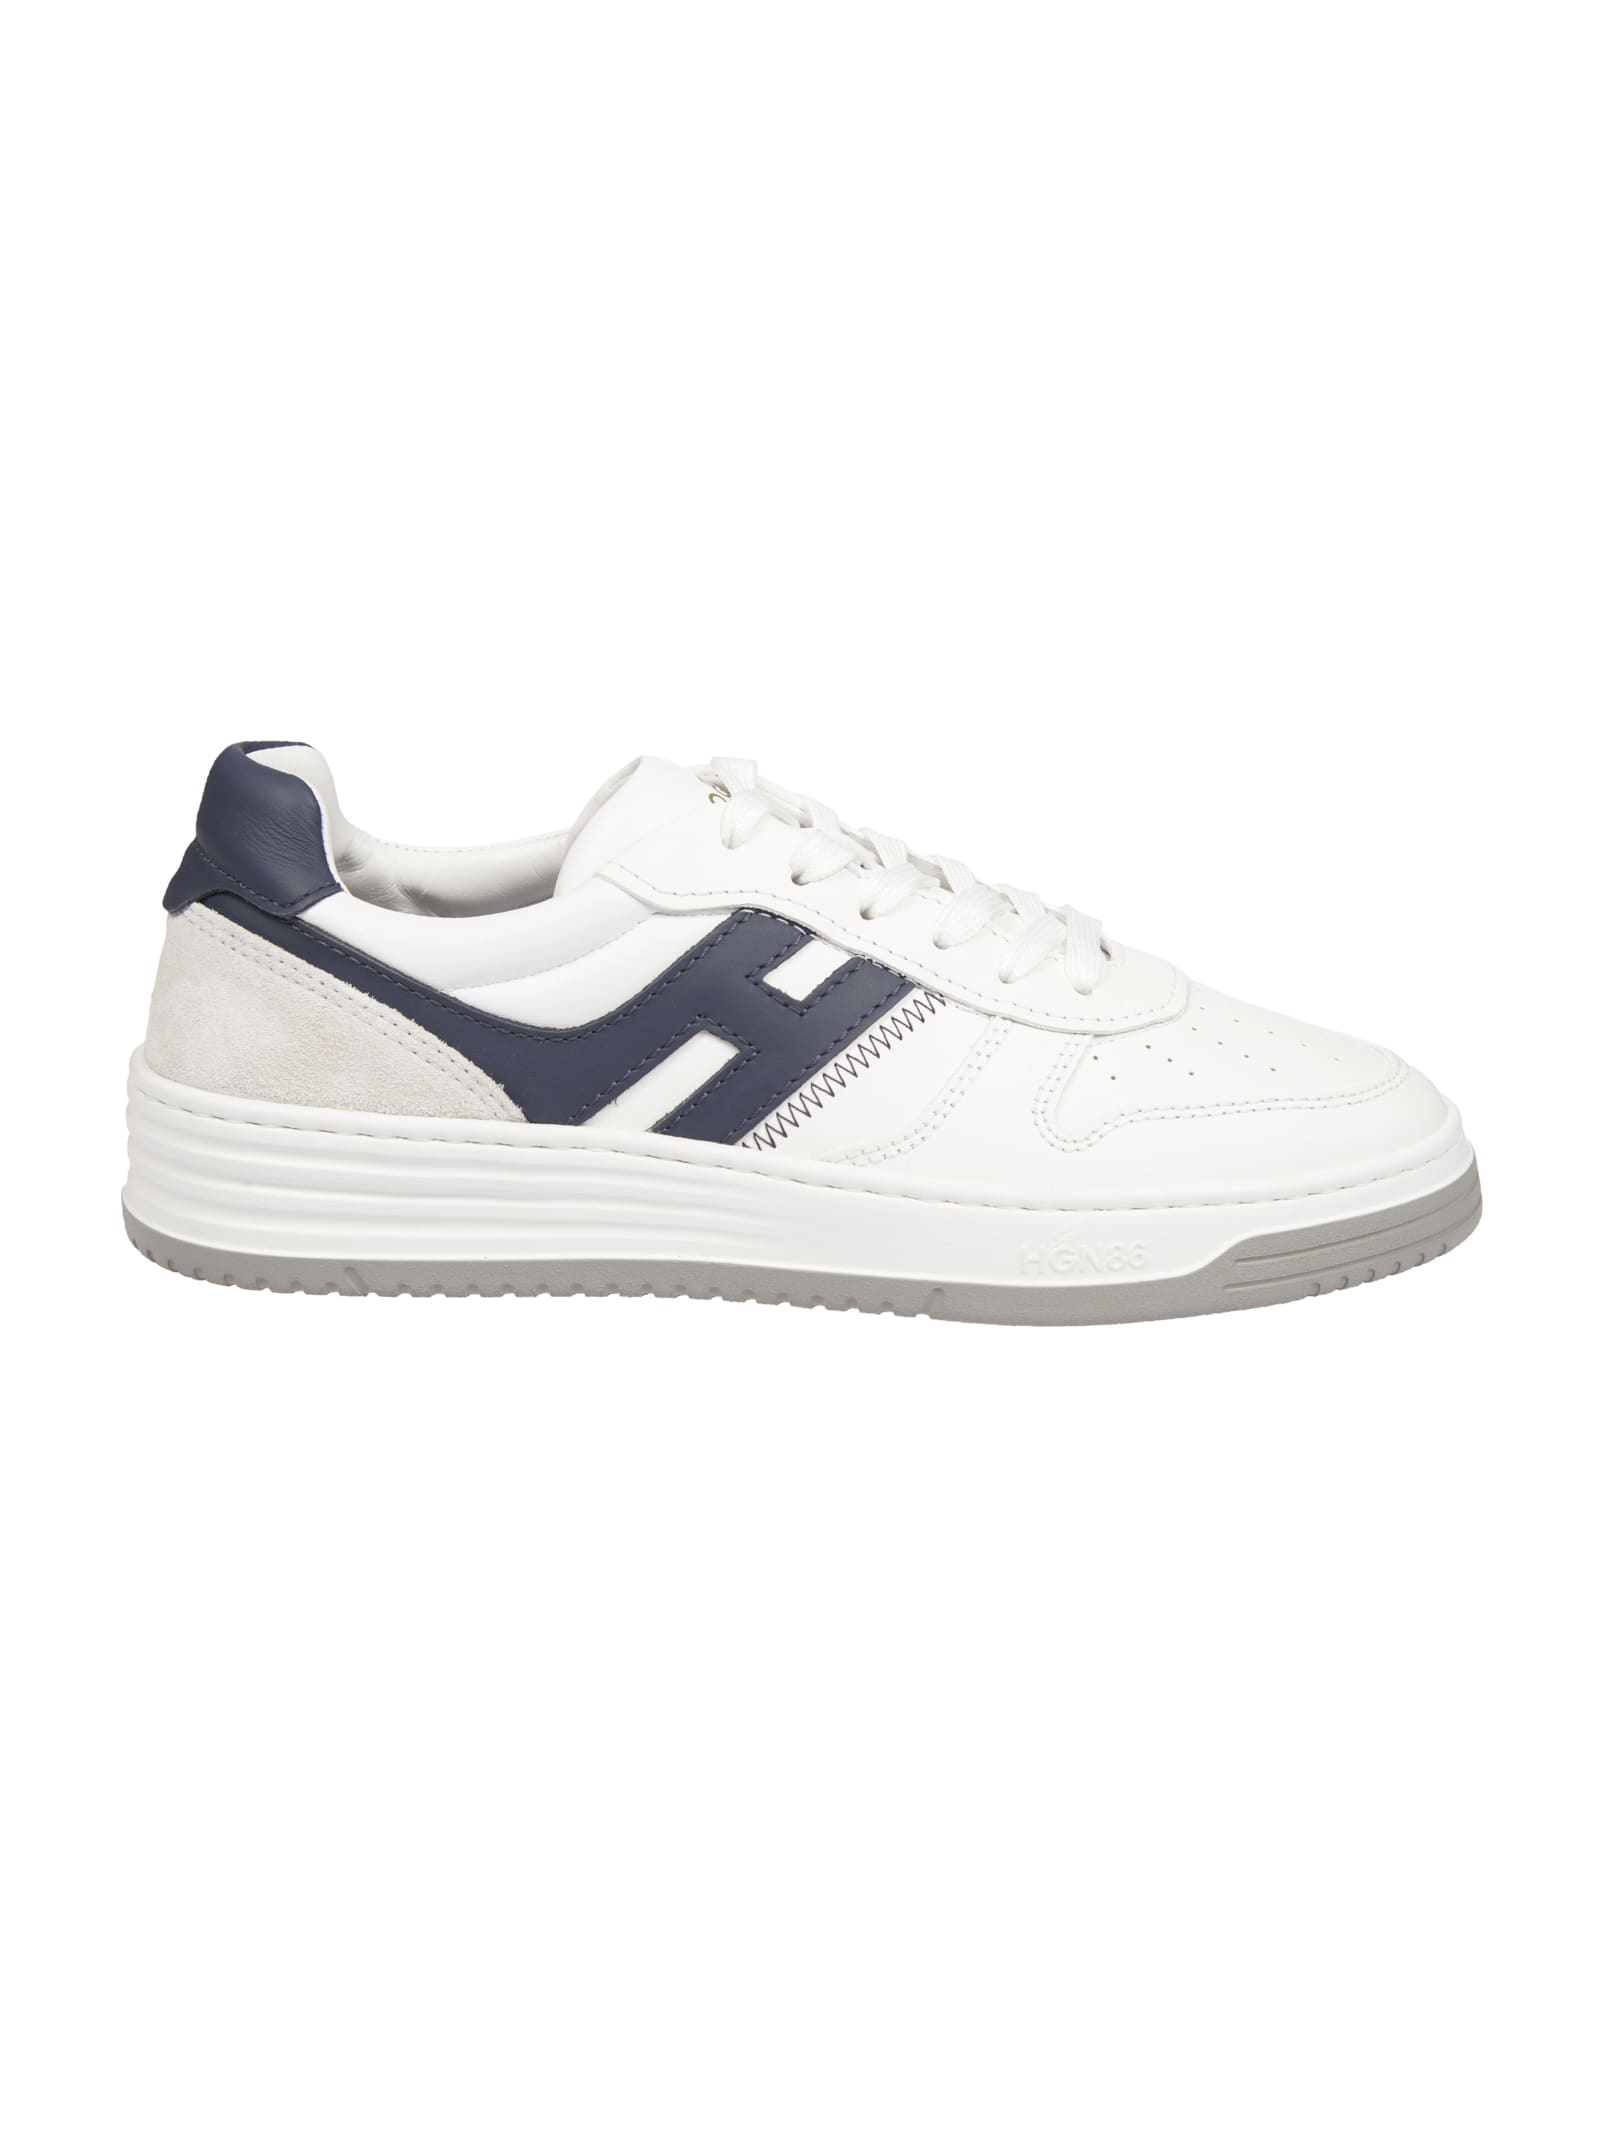 Hogan H630 Sneakers